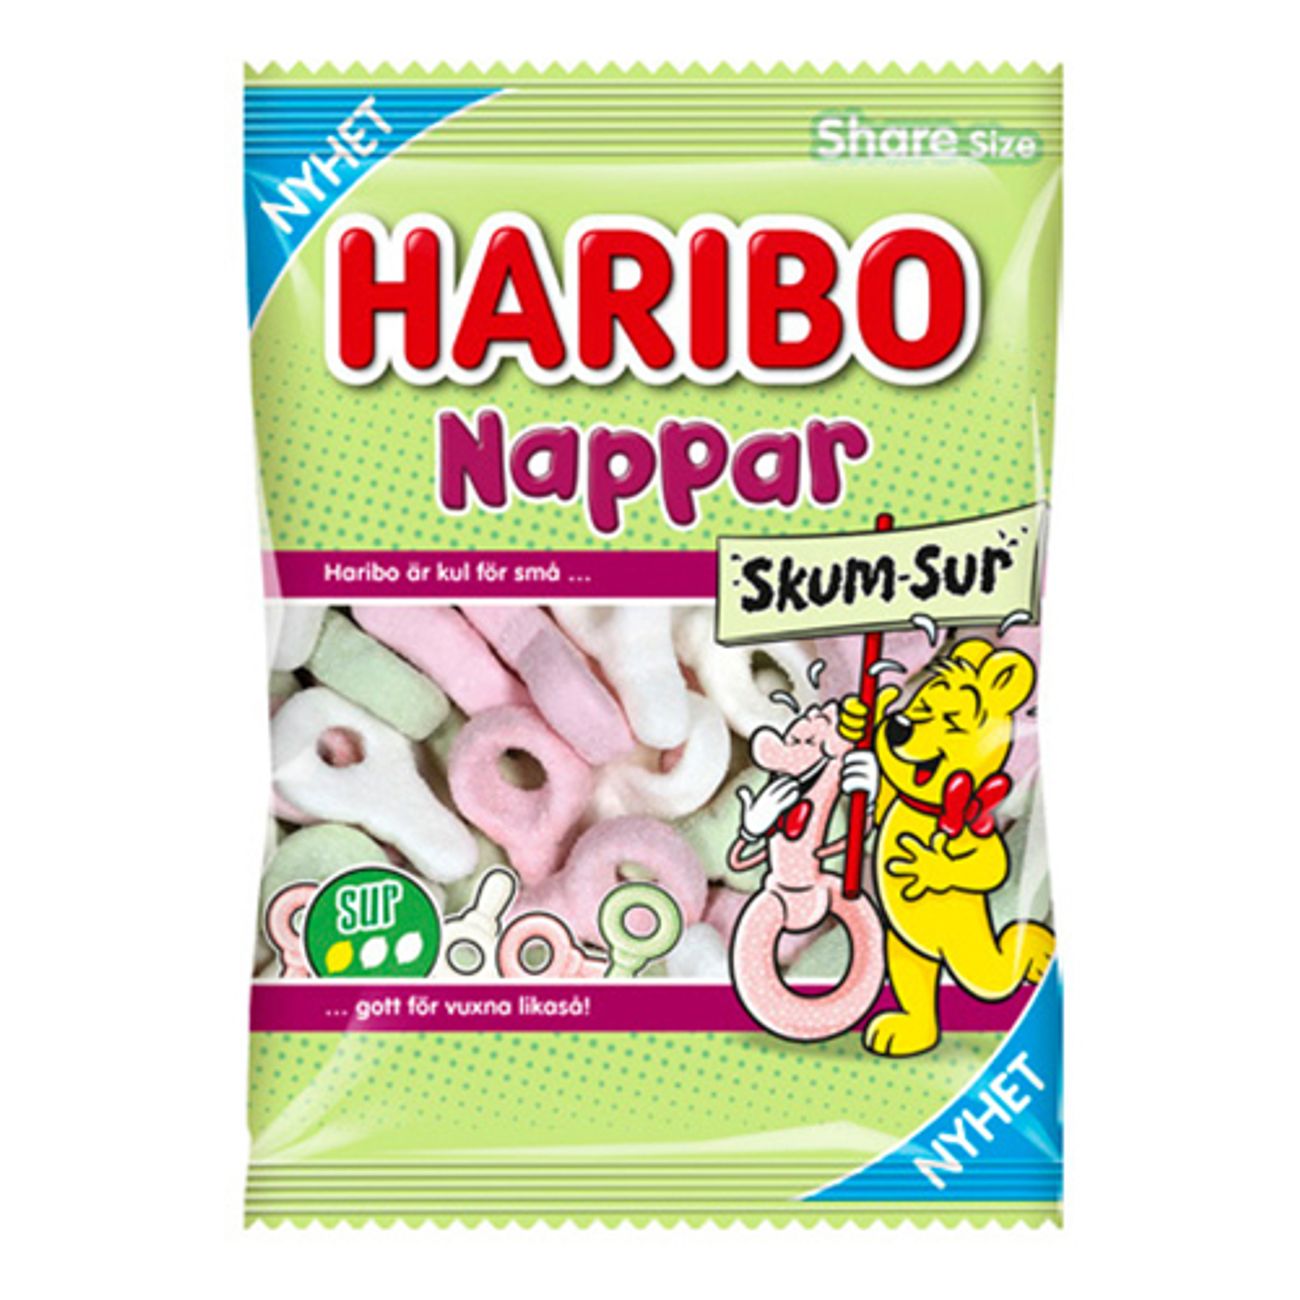 haribo-nappar-skum-sur-73925-1